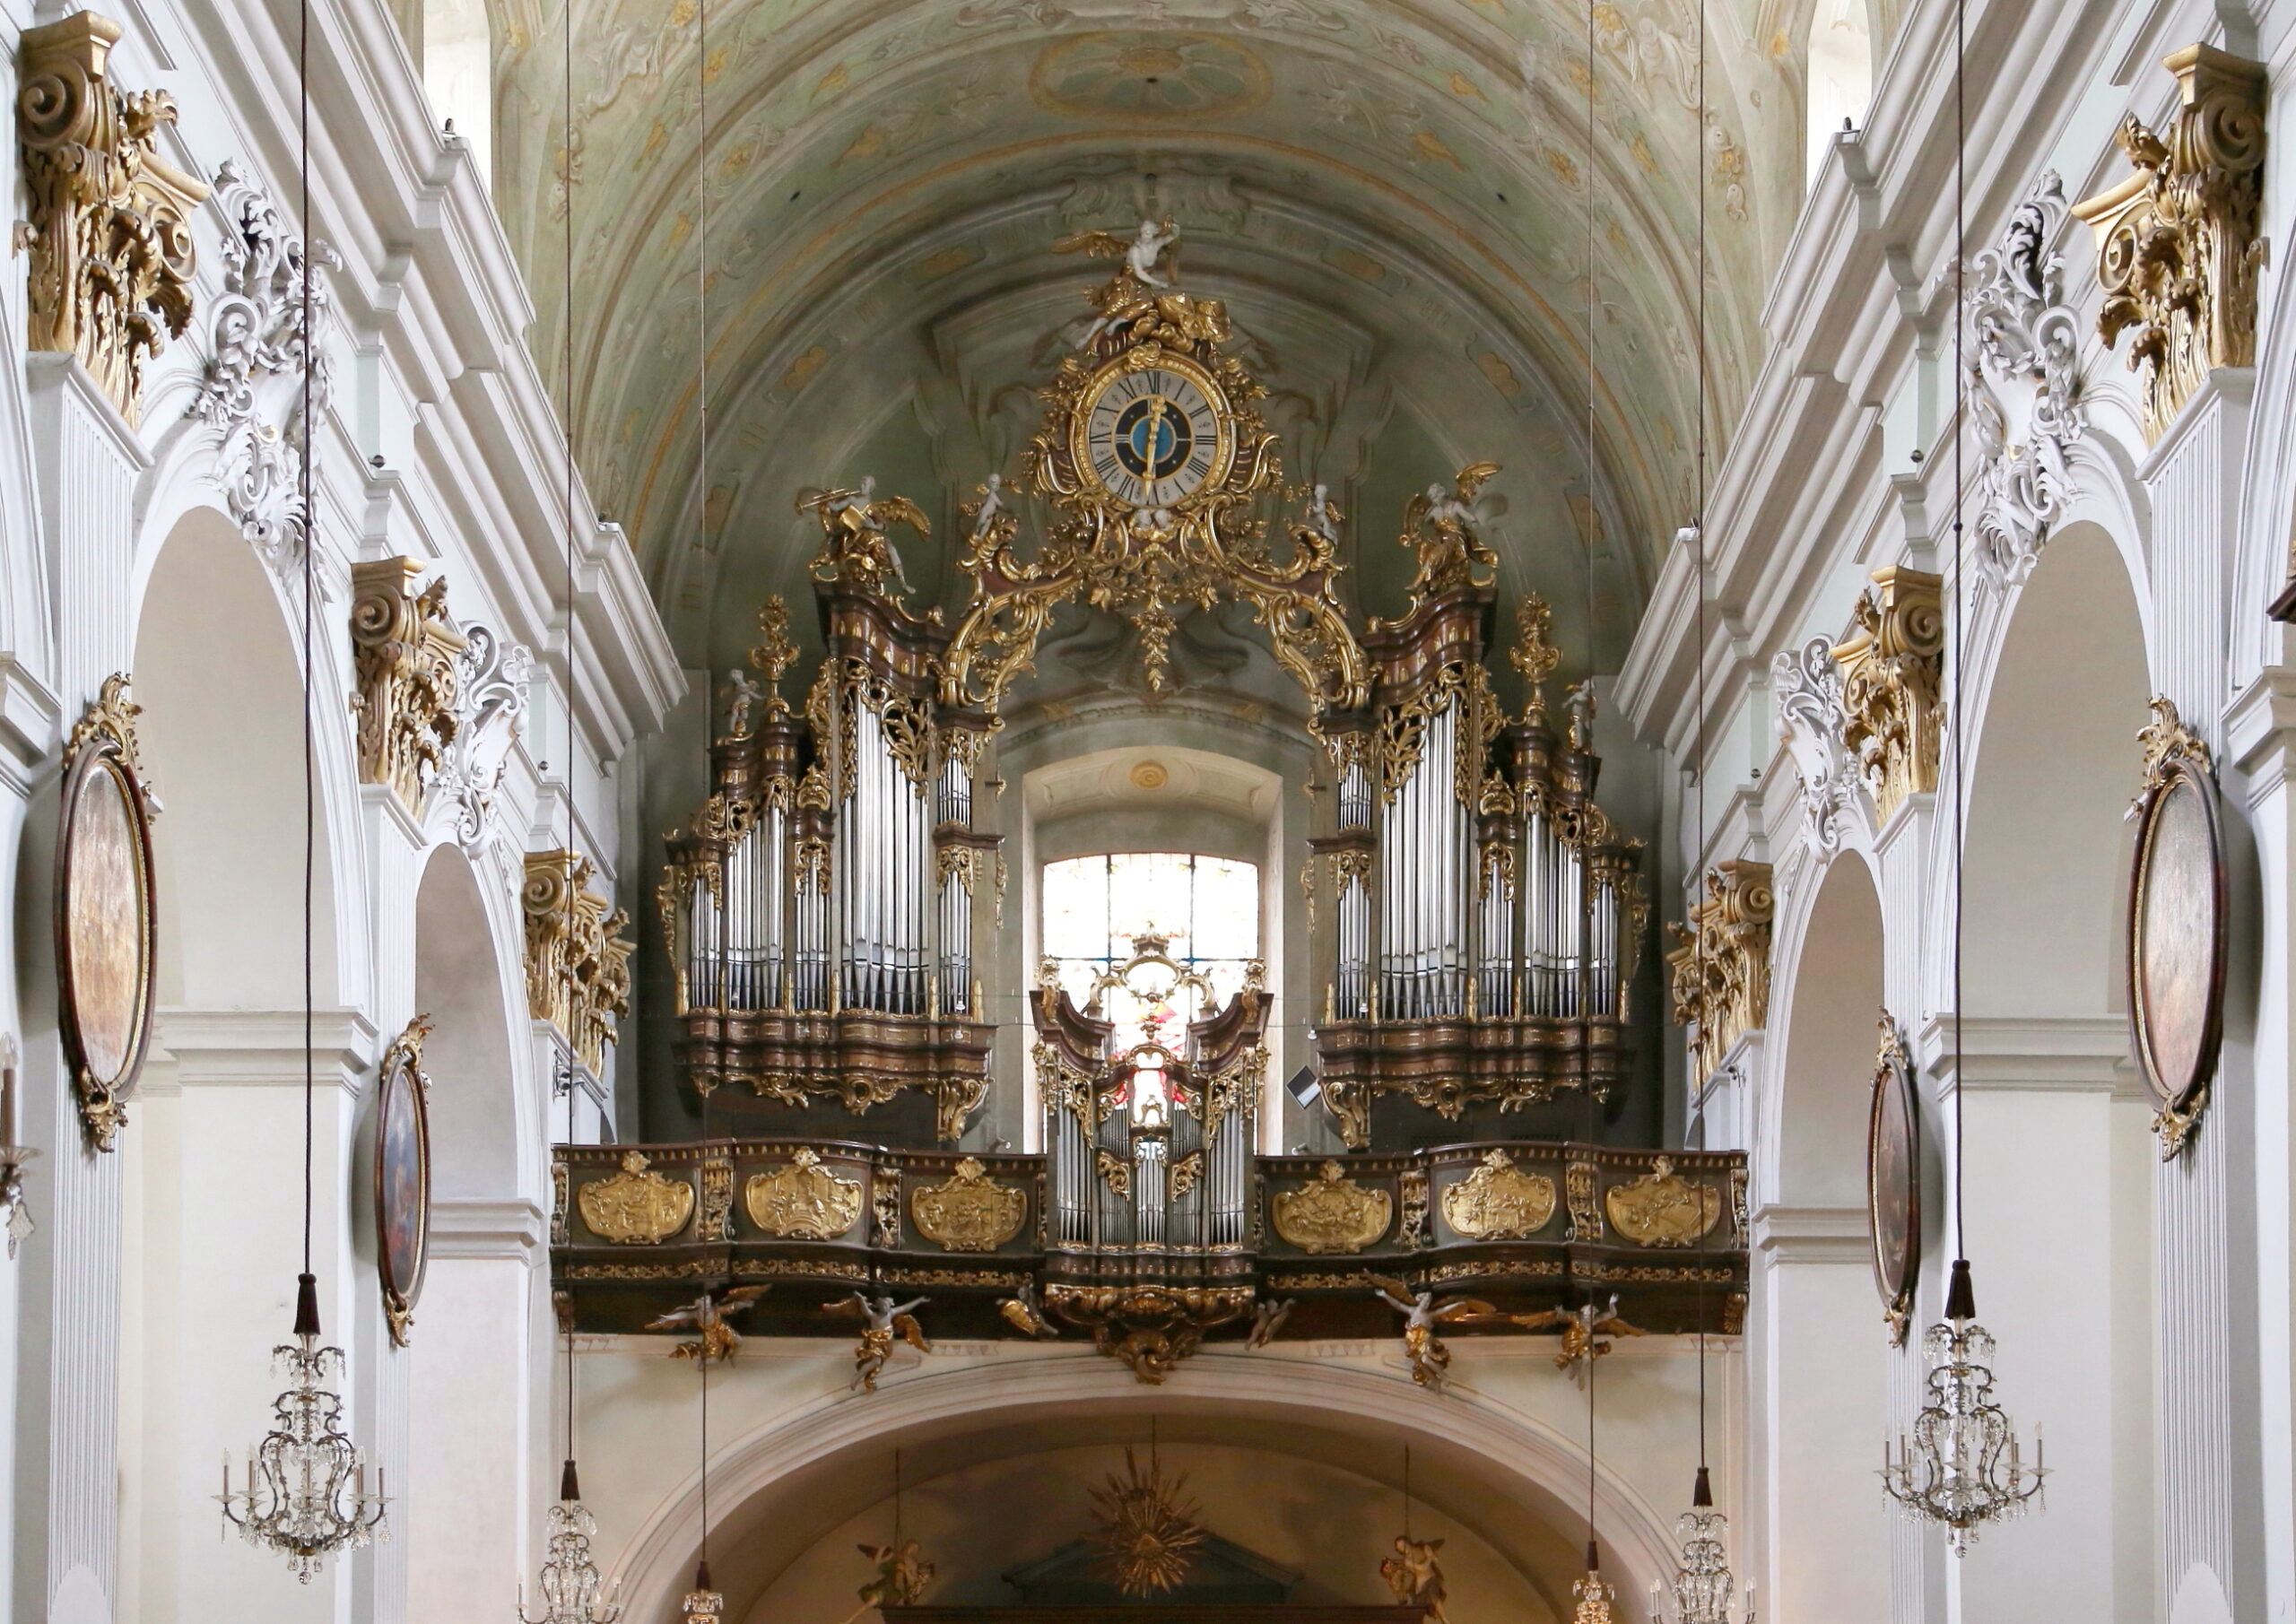 Orgelmusik in einer Ostinato – Klammer